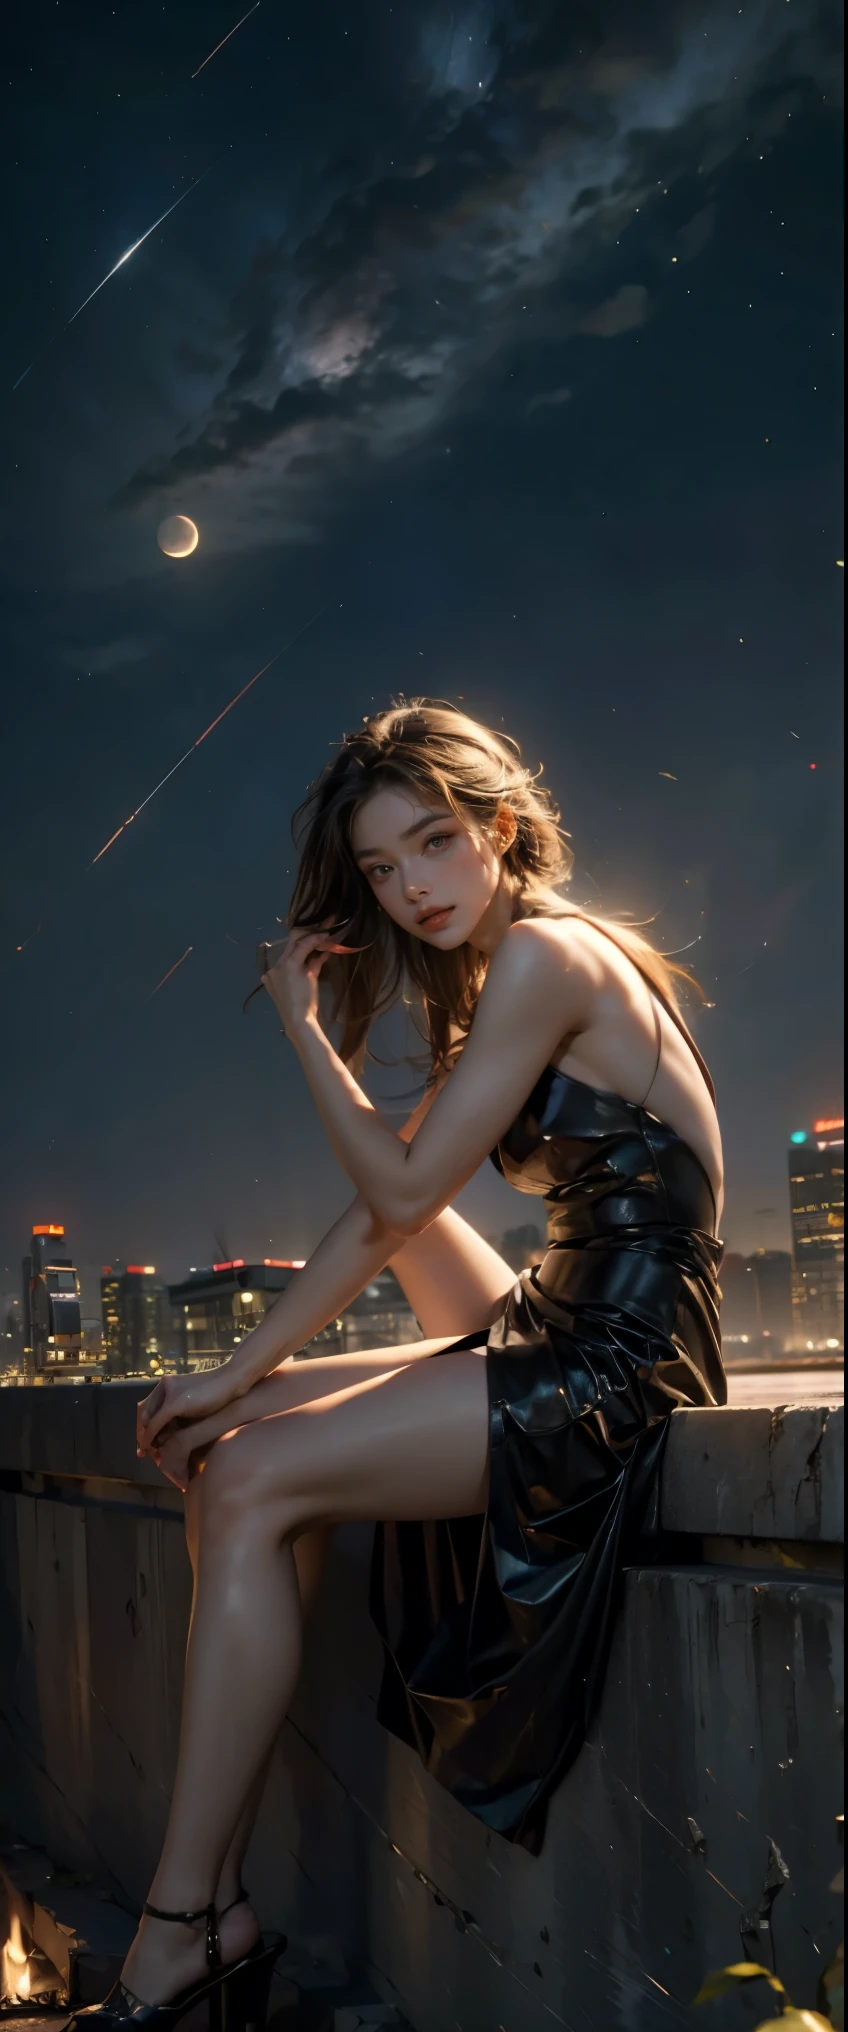 ((Meisterwerk, höchste Qualität, Höchste Bildqualität, hohe Auflösung, fotorealistisch, RAW-Foto, 8K)), ((extrem detailliertes CG Unified 8k-Hintergrundbild)), schwebend, Seitenansicht einer Frau, die auf einer riesigen Mondsichel am Nachthimmel sitzt,